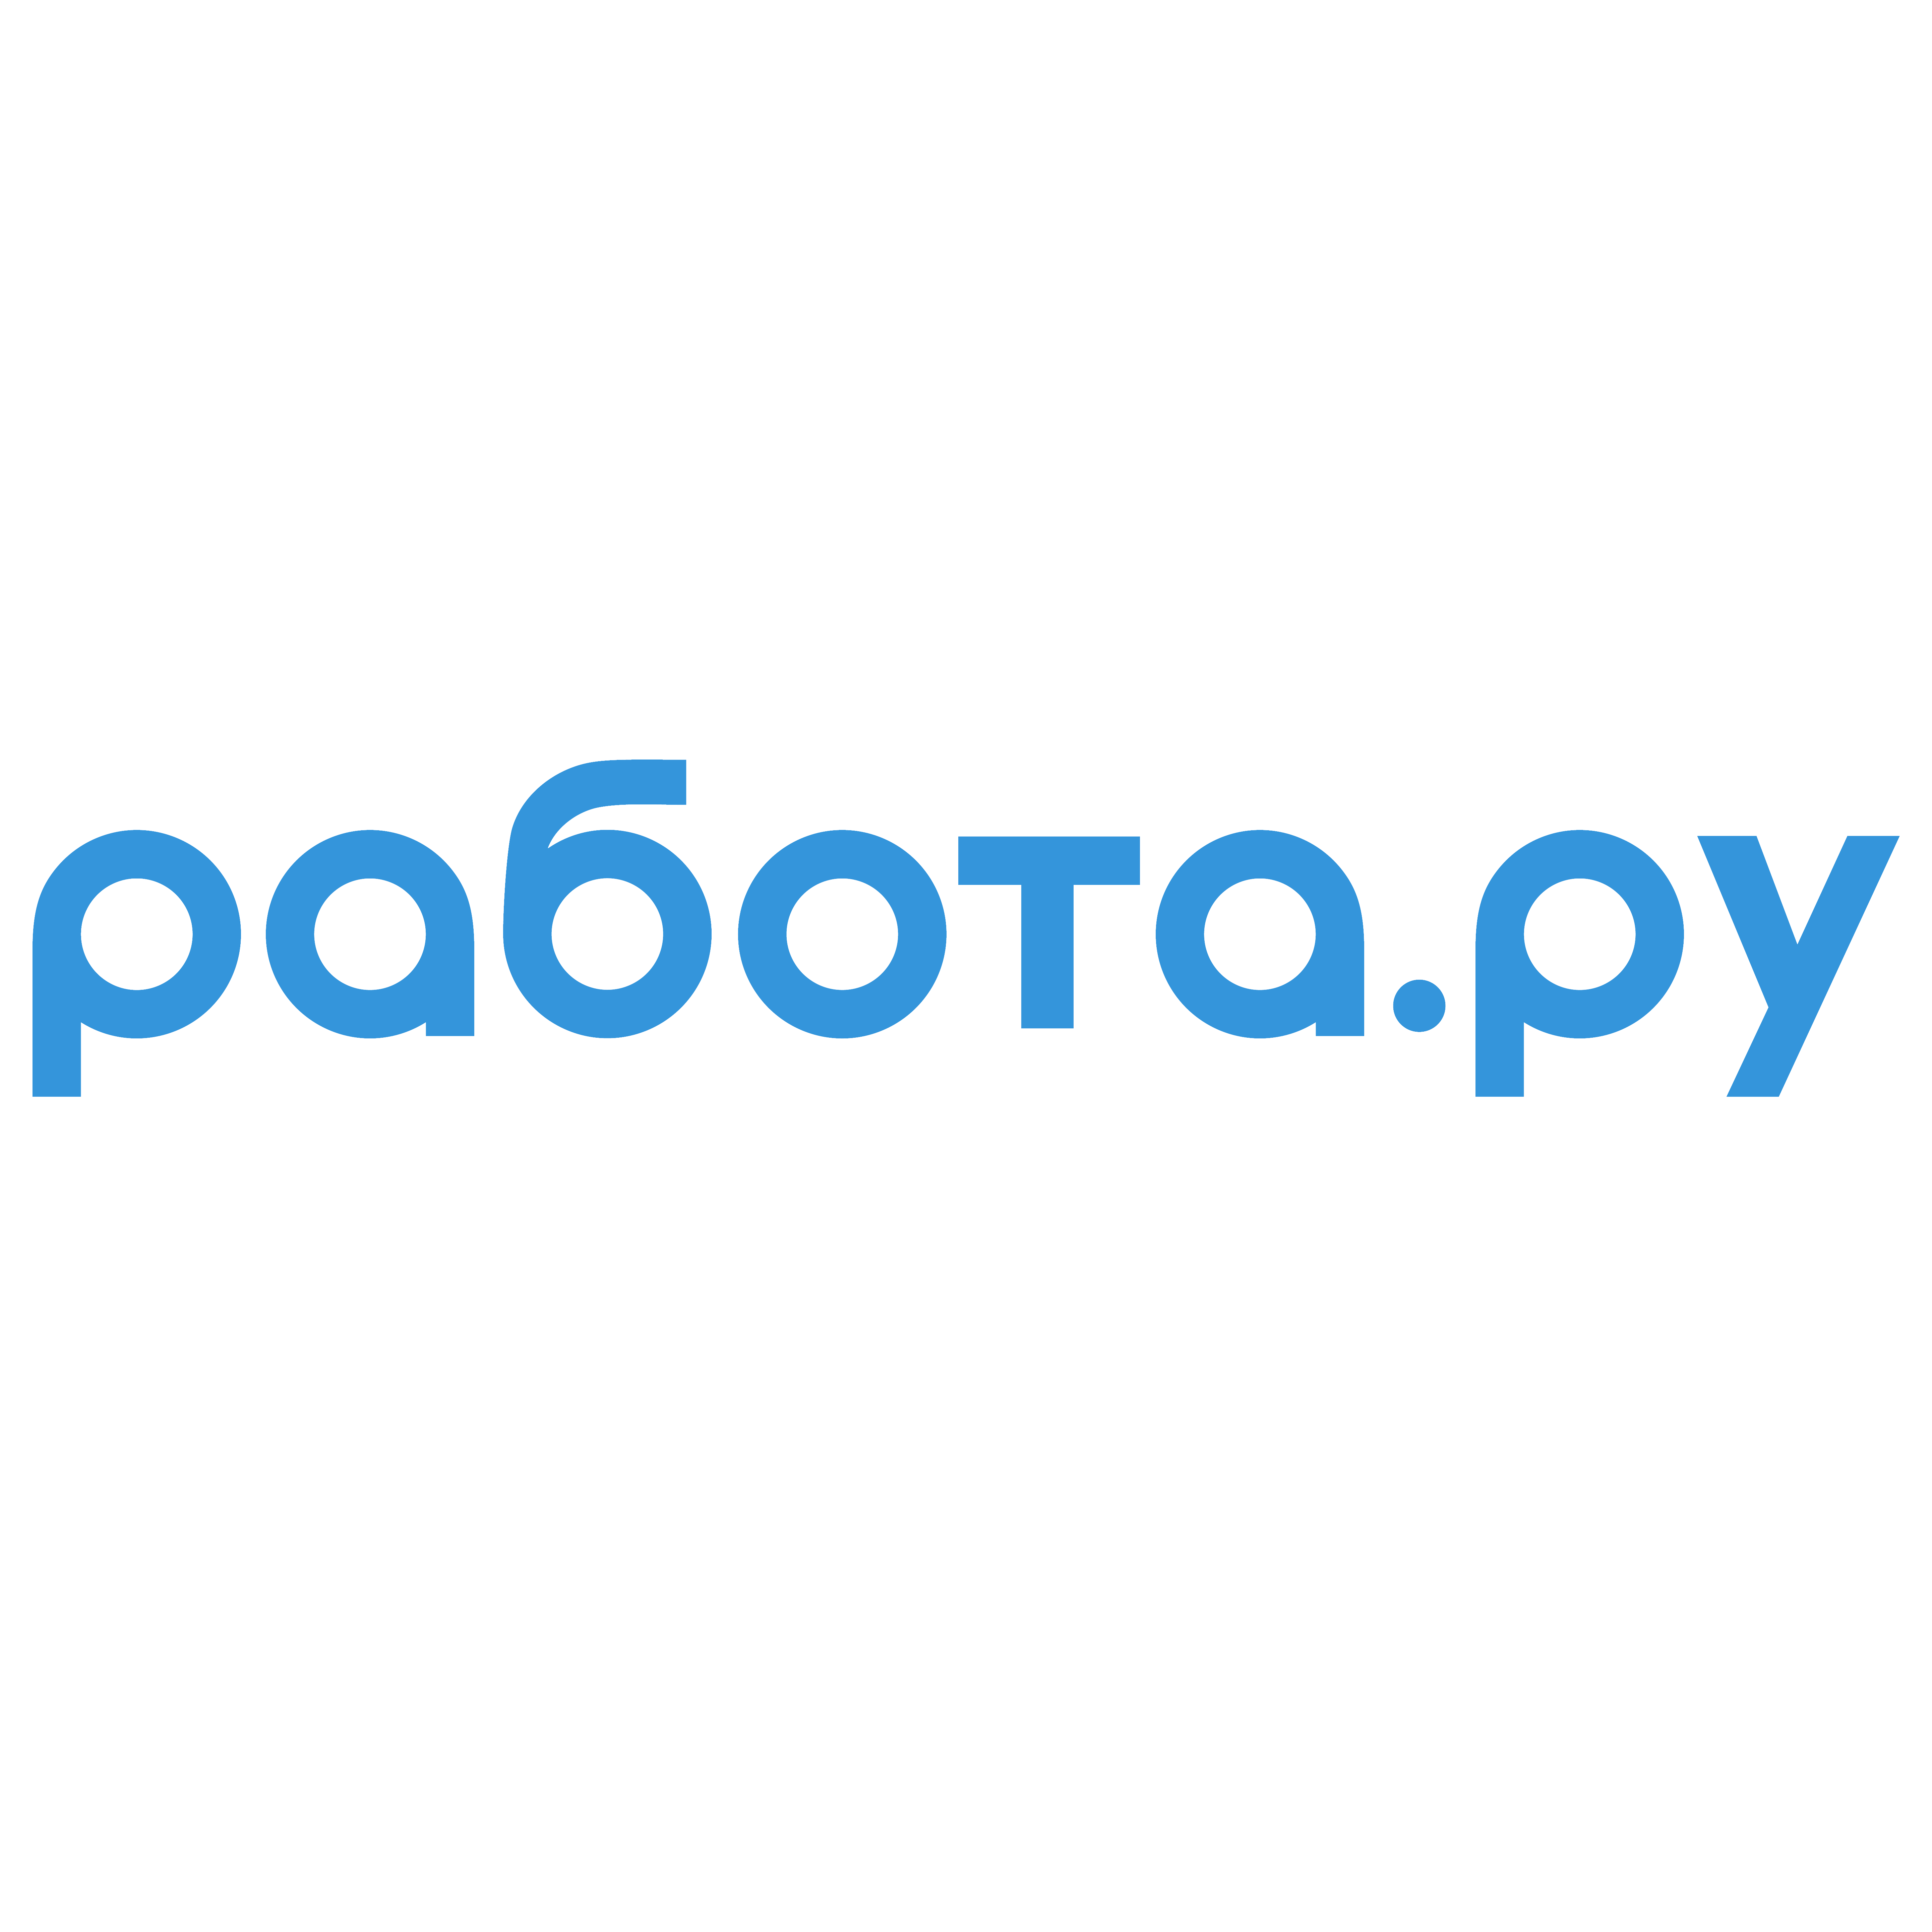 Работа и точка ру. Работа ру. Rabota.ru логотип. Работа логотип. Работа ру вакансии.